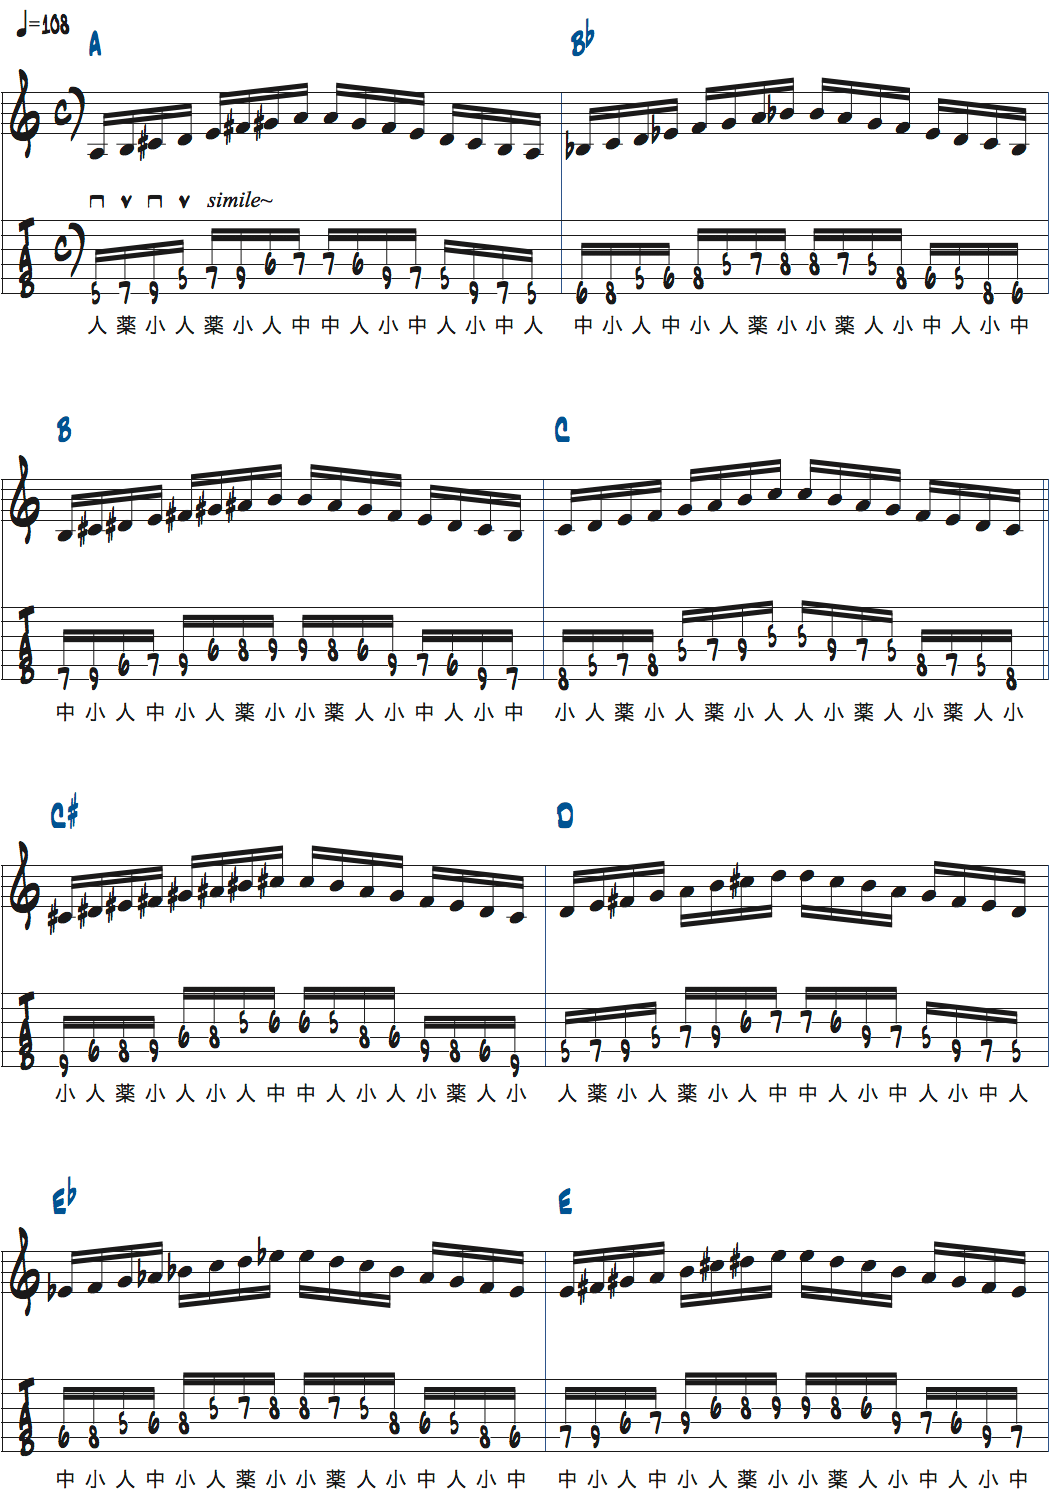 ポールジャクソンジュニアのメジャースケールを使った基礎練習楽譜1ページ目